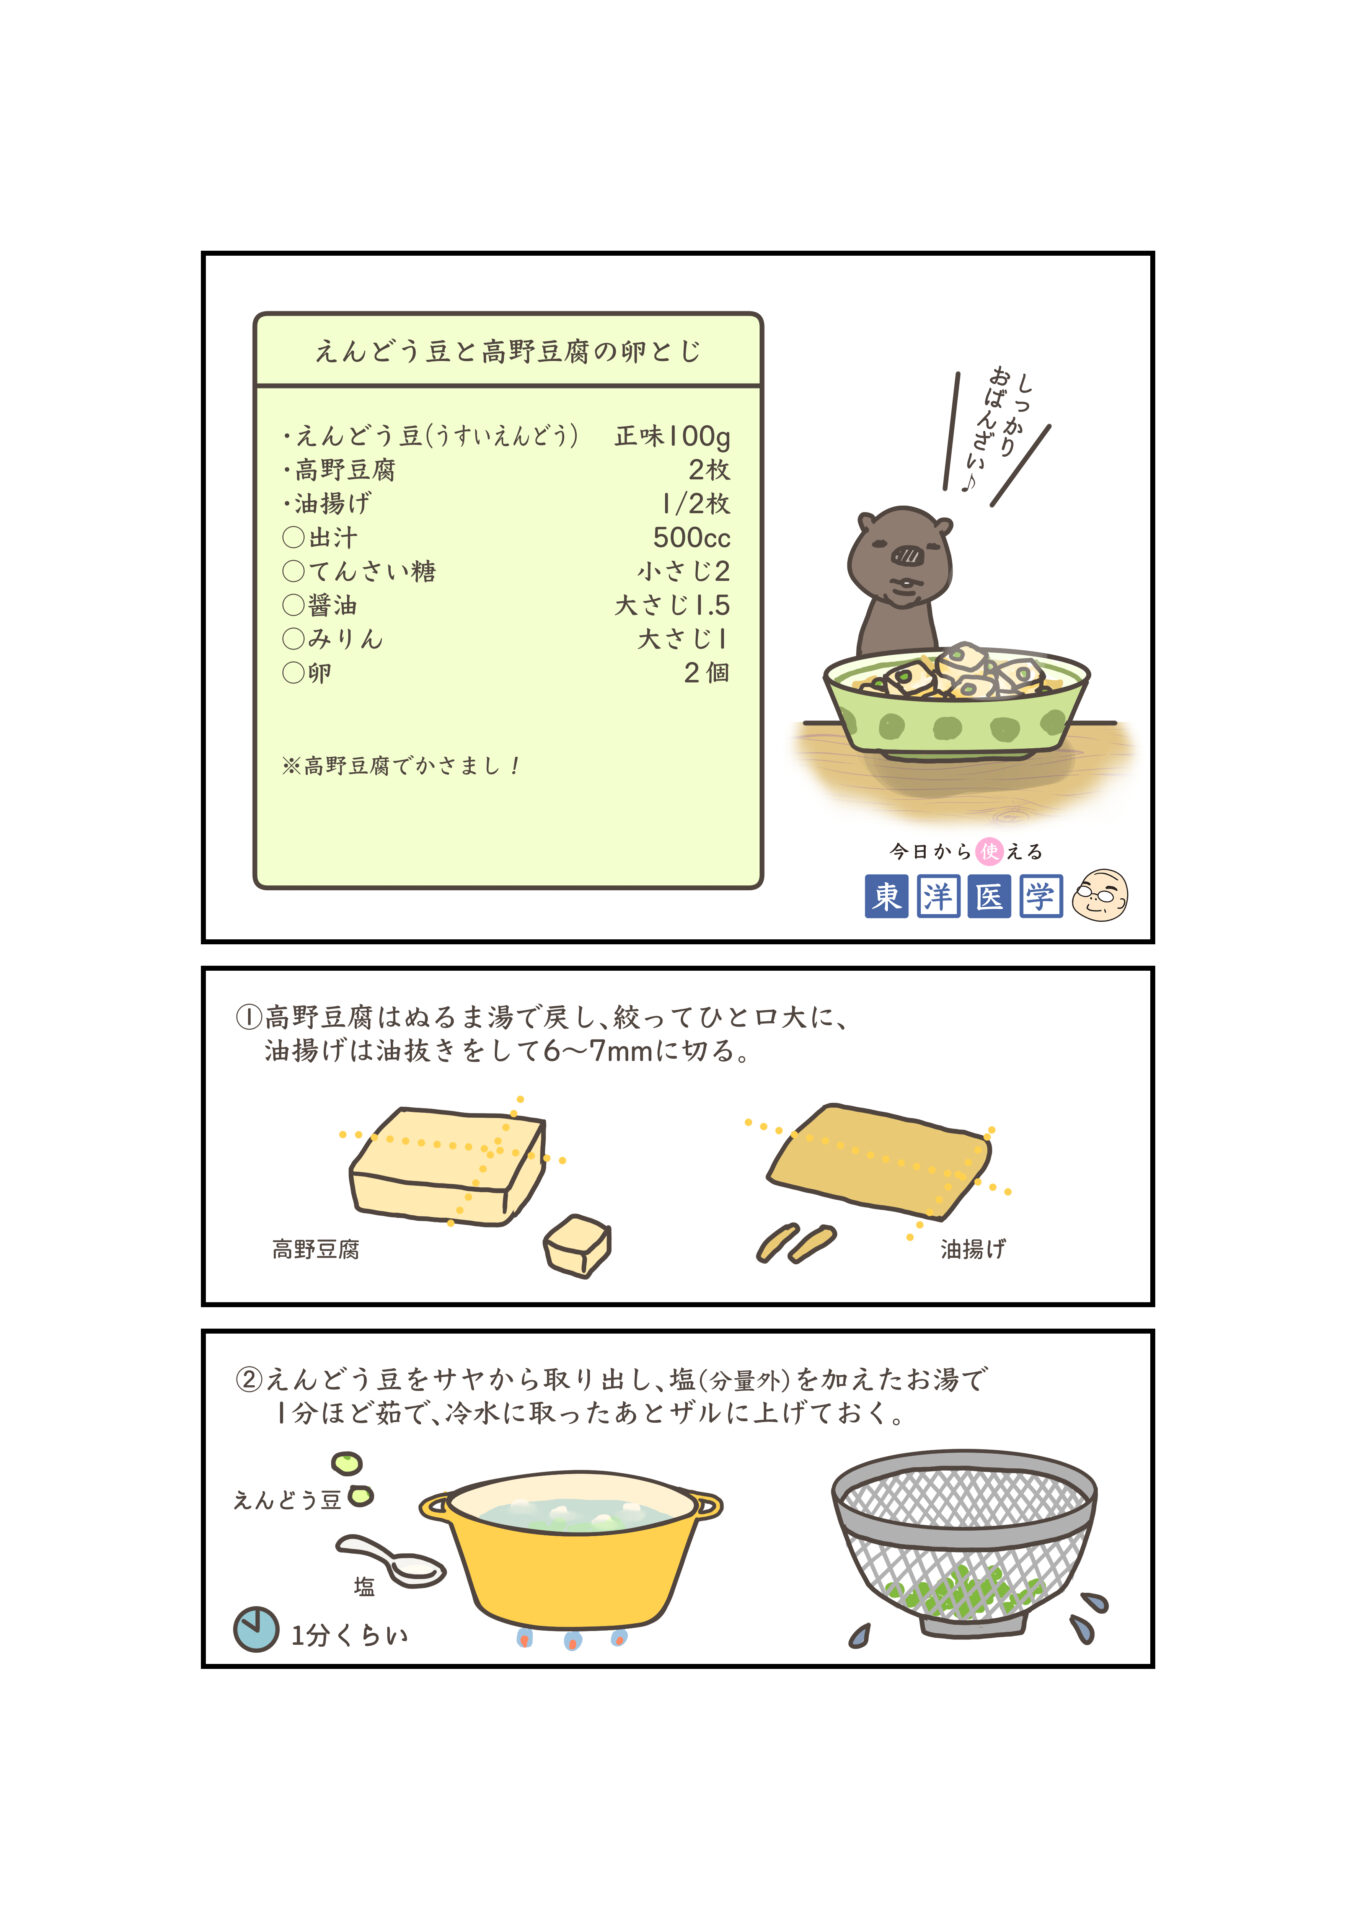 えんどう豆と高野豆腐の卵とじ